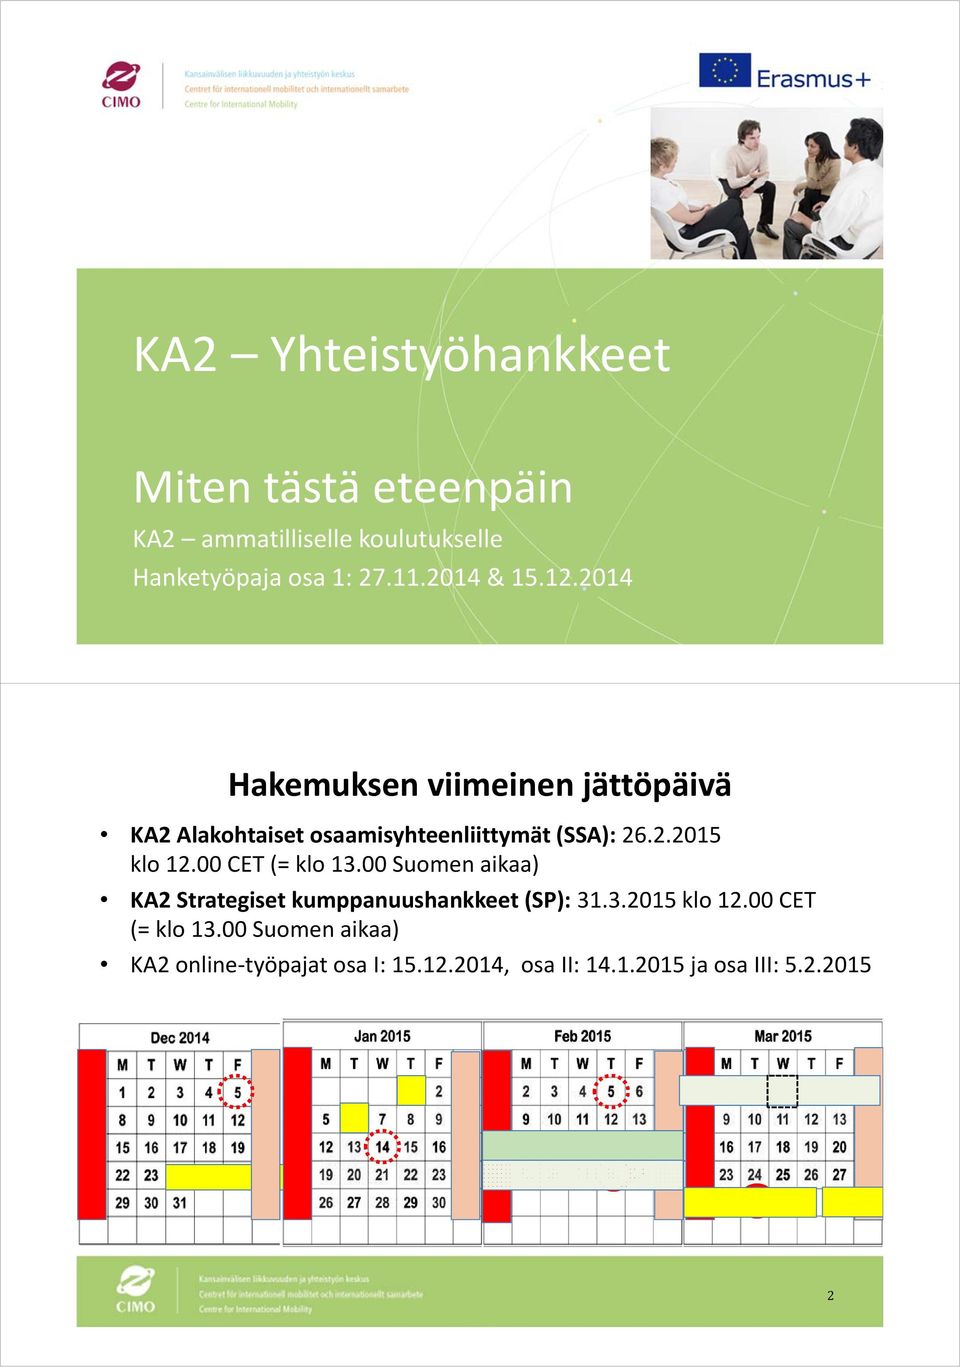 00 CET (= klo 13.00 Suomen aikaa) KA2 Strategiset kumppanuushankkeet (SP): 31.3.2015 klo 12.